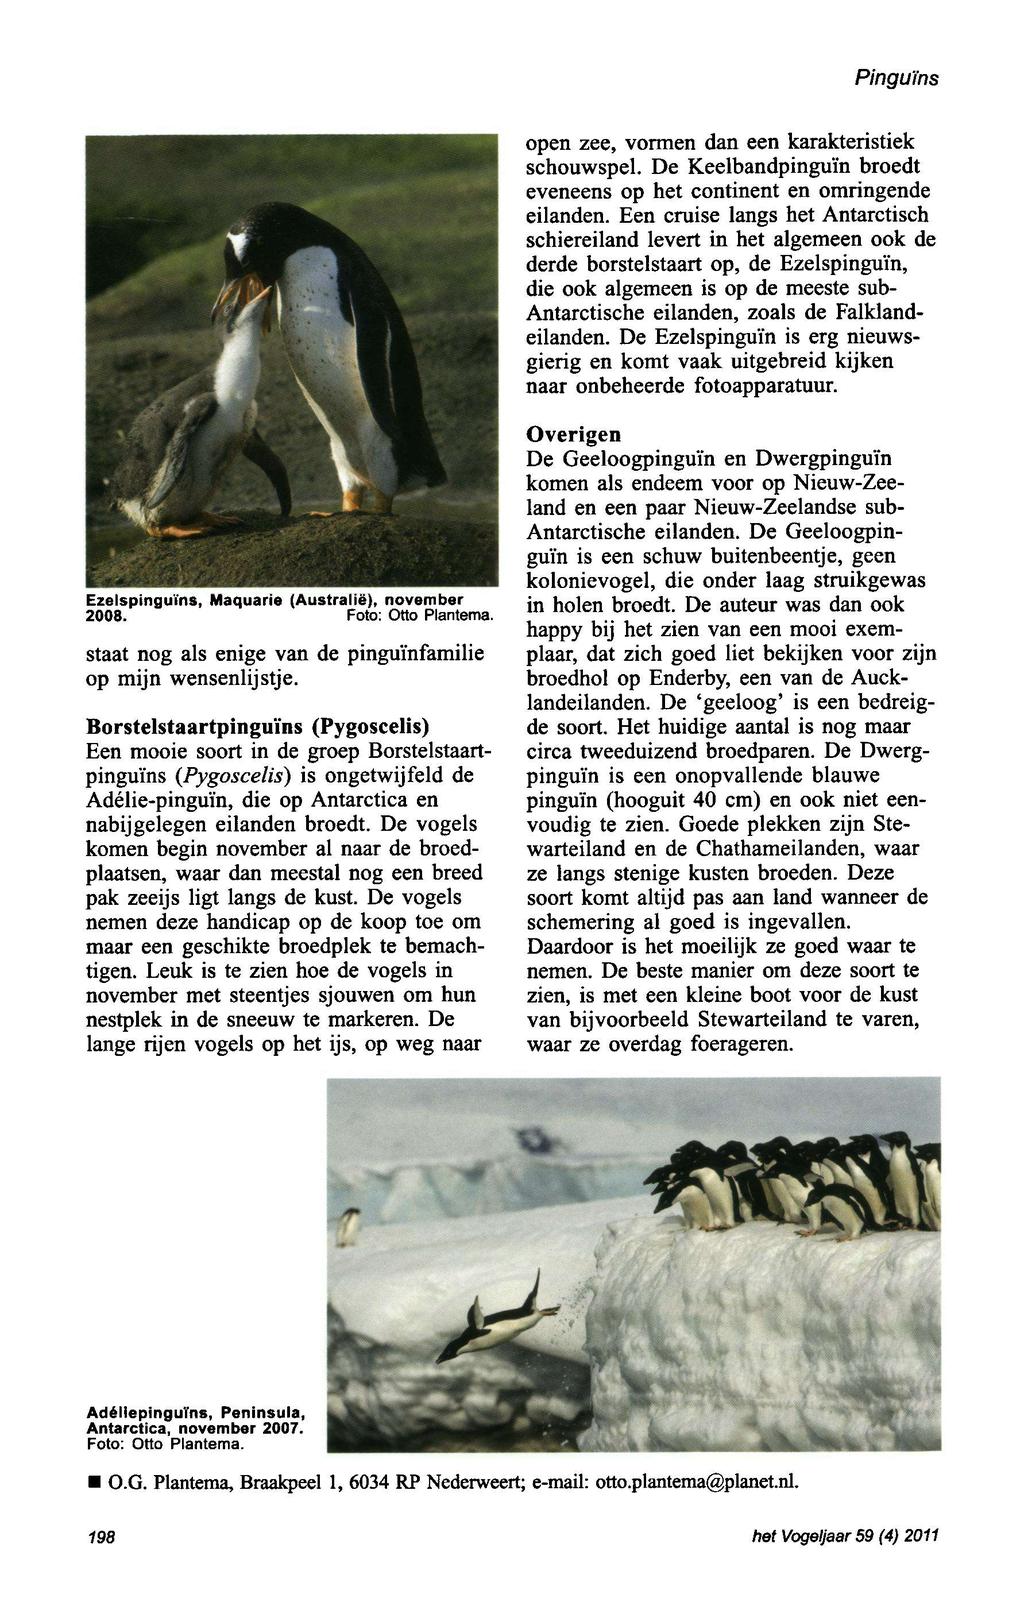 Pinguins open zee, vormen dan een karakteristiek schouwspel. De Keelbandpinguïn broedt eveneens op het continent en omringende eilanden.